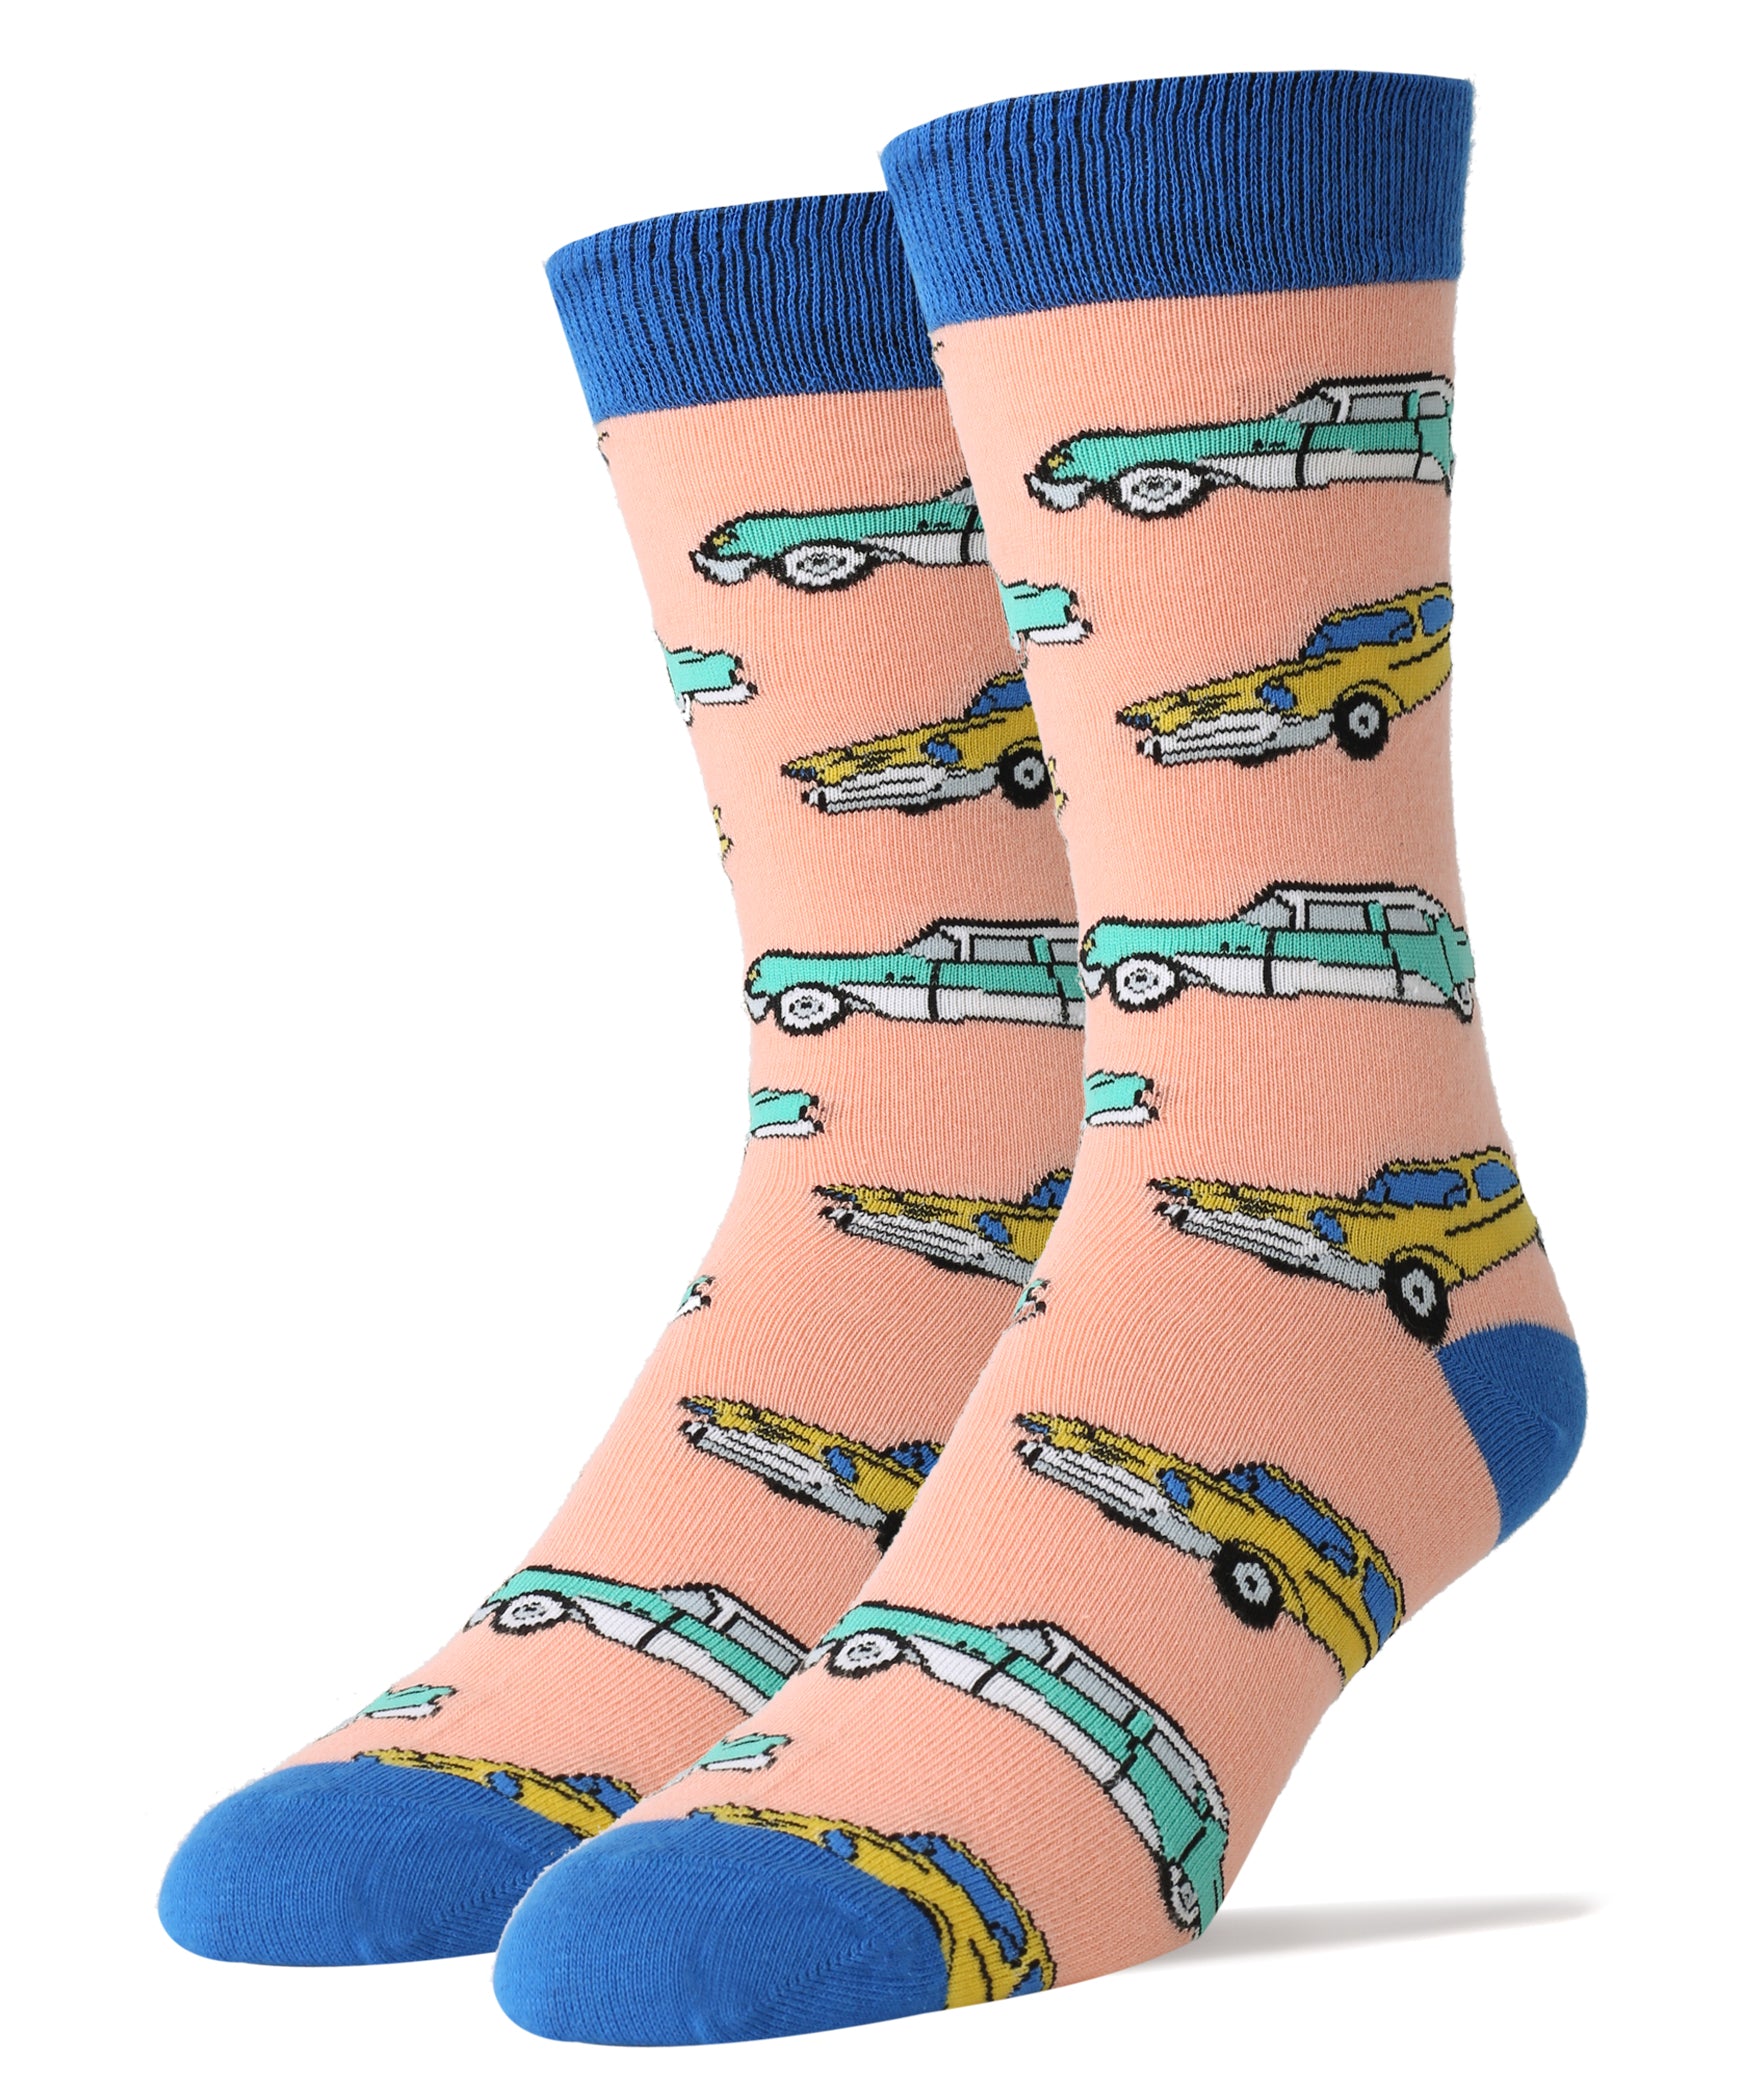 Wheels Socks | Novelty Crew Socks For Men